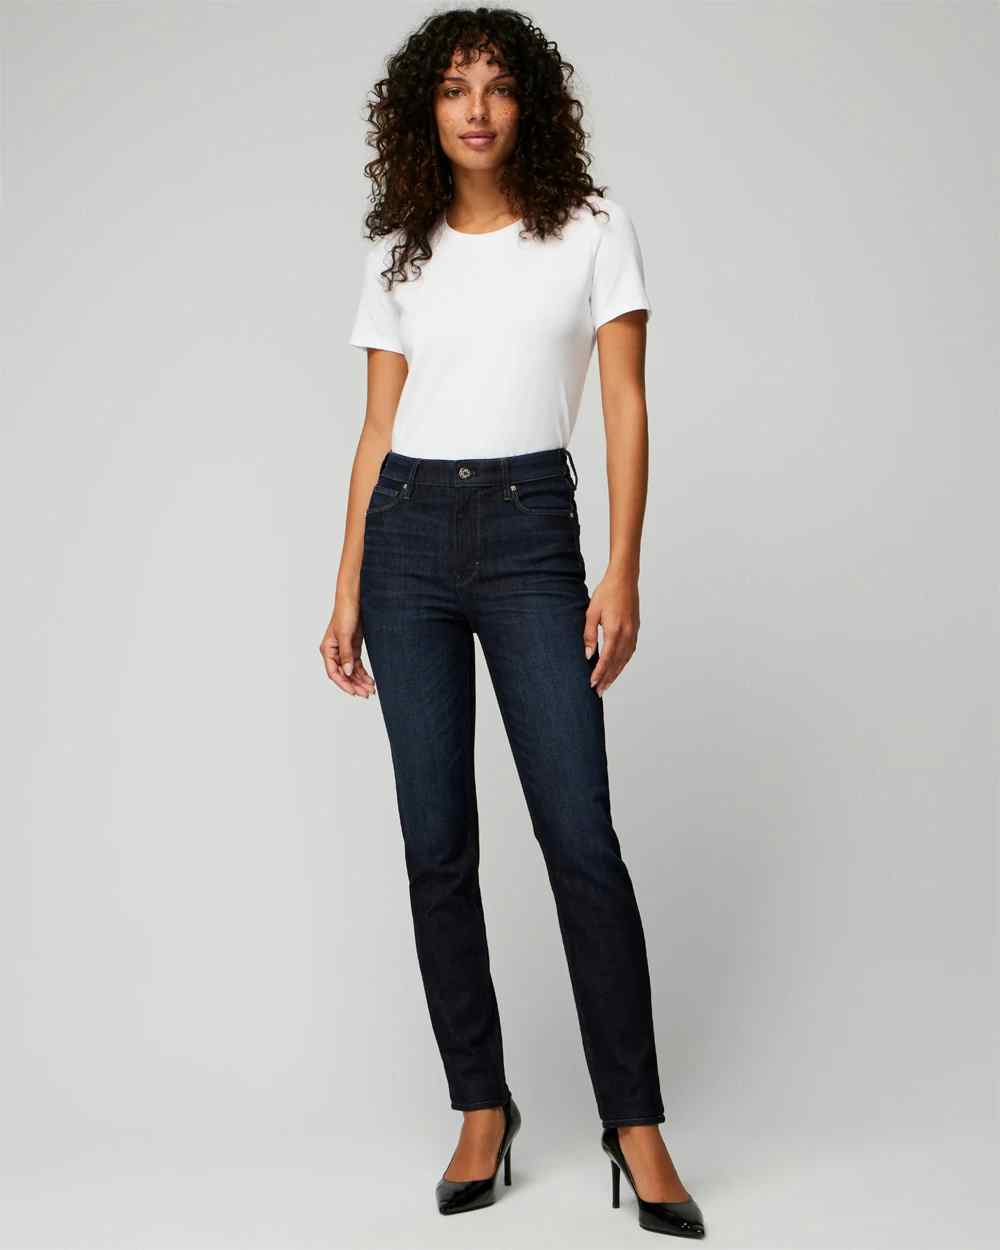 Shop Women's Skinny, Slim, Straight, Bootcut, & Girlfriend Jeans ...